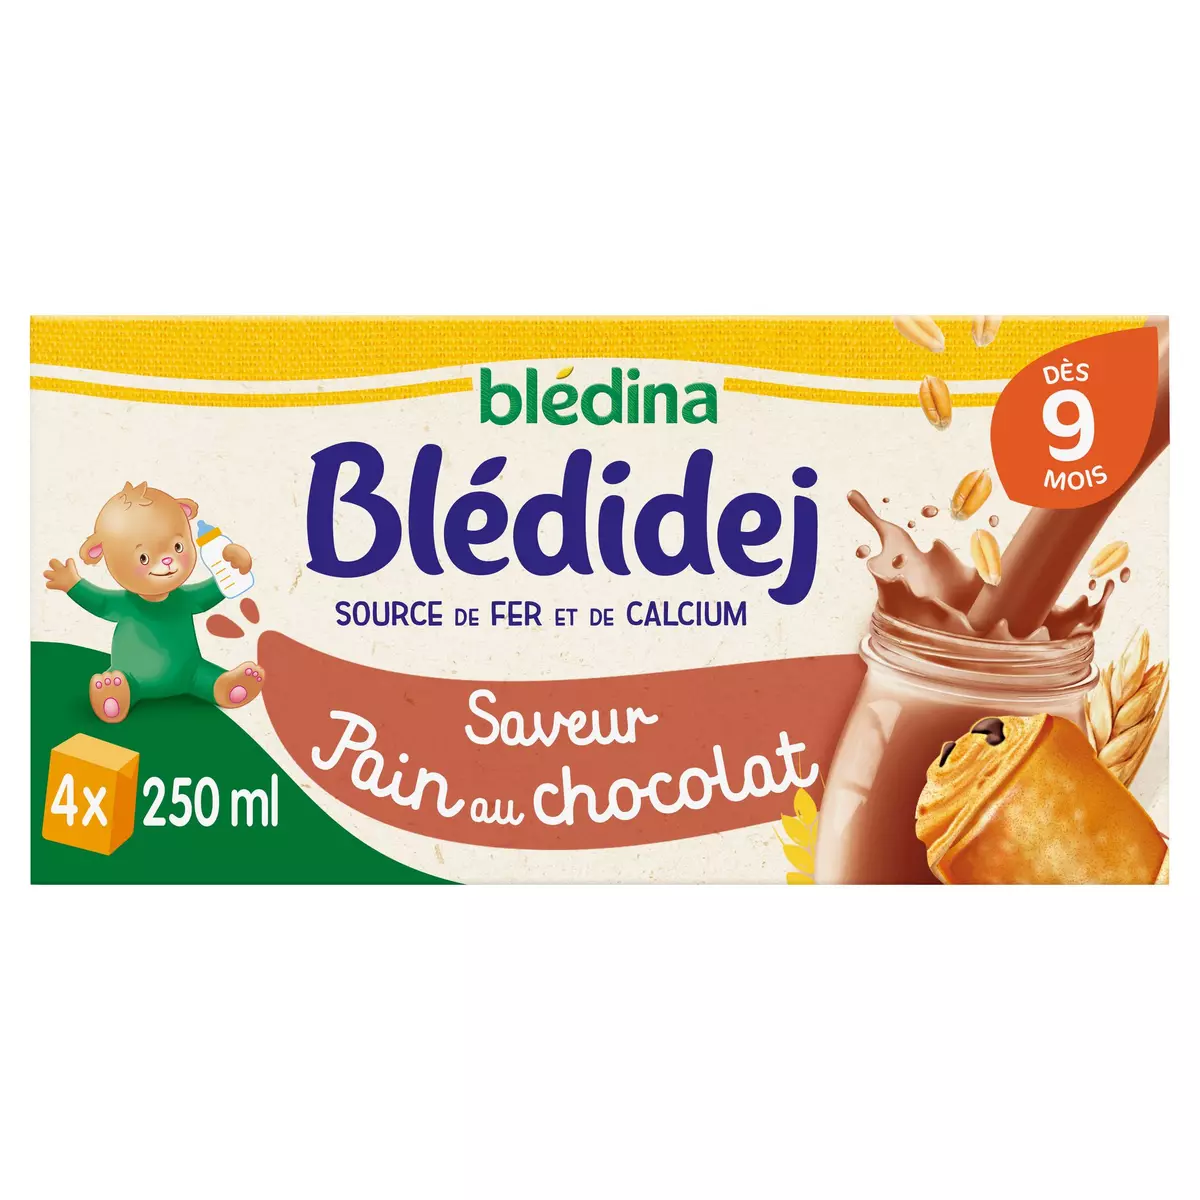 BLEDINA Blédidej céréales lactées pain au chocolat dès 9 mois 4x250ml